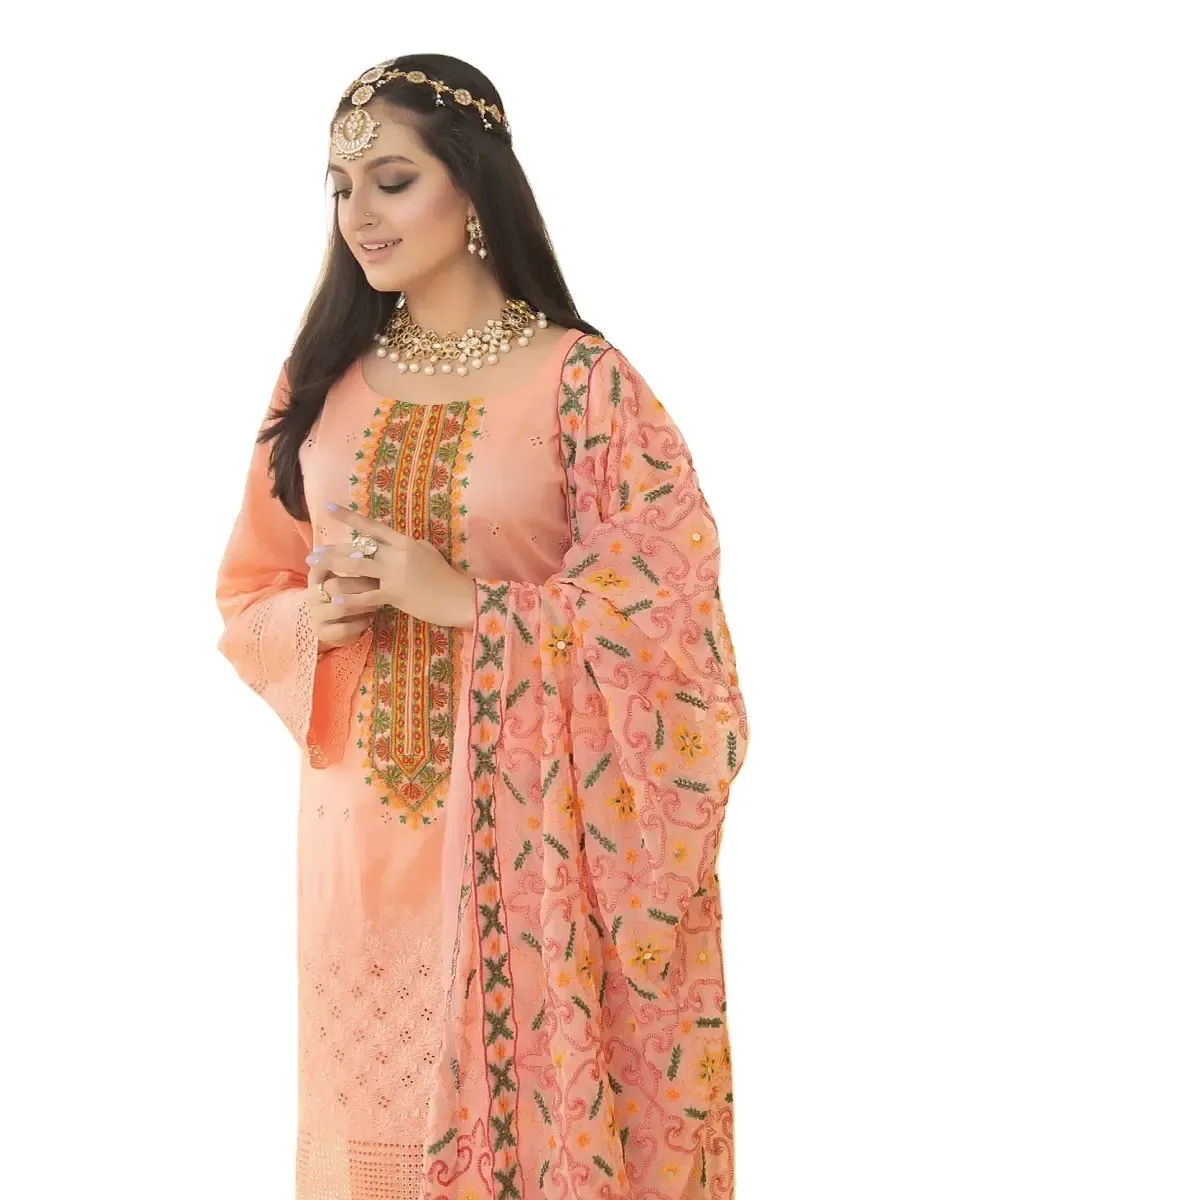 सुंदर नए डिज़ाइन वाली महिलाओं के लिए ग्रीष्मकालीन संग्रह पाकिस्तानी भारतीय बांग्लादेशी शैली की कैज़ुअल पोशाकें शलवार क़मीज़ लंबी पोशाकें